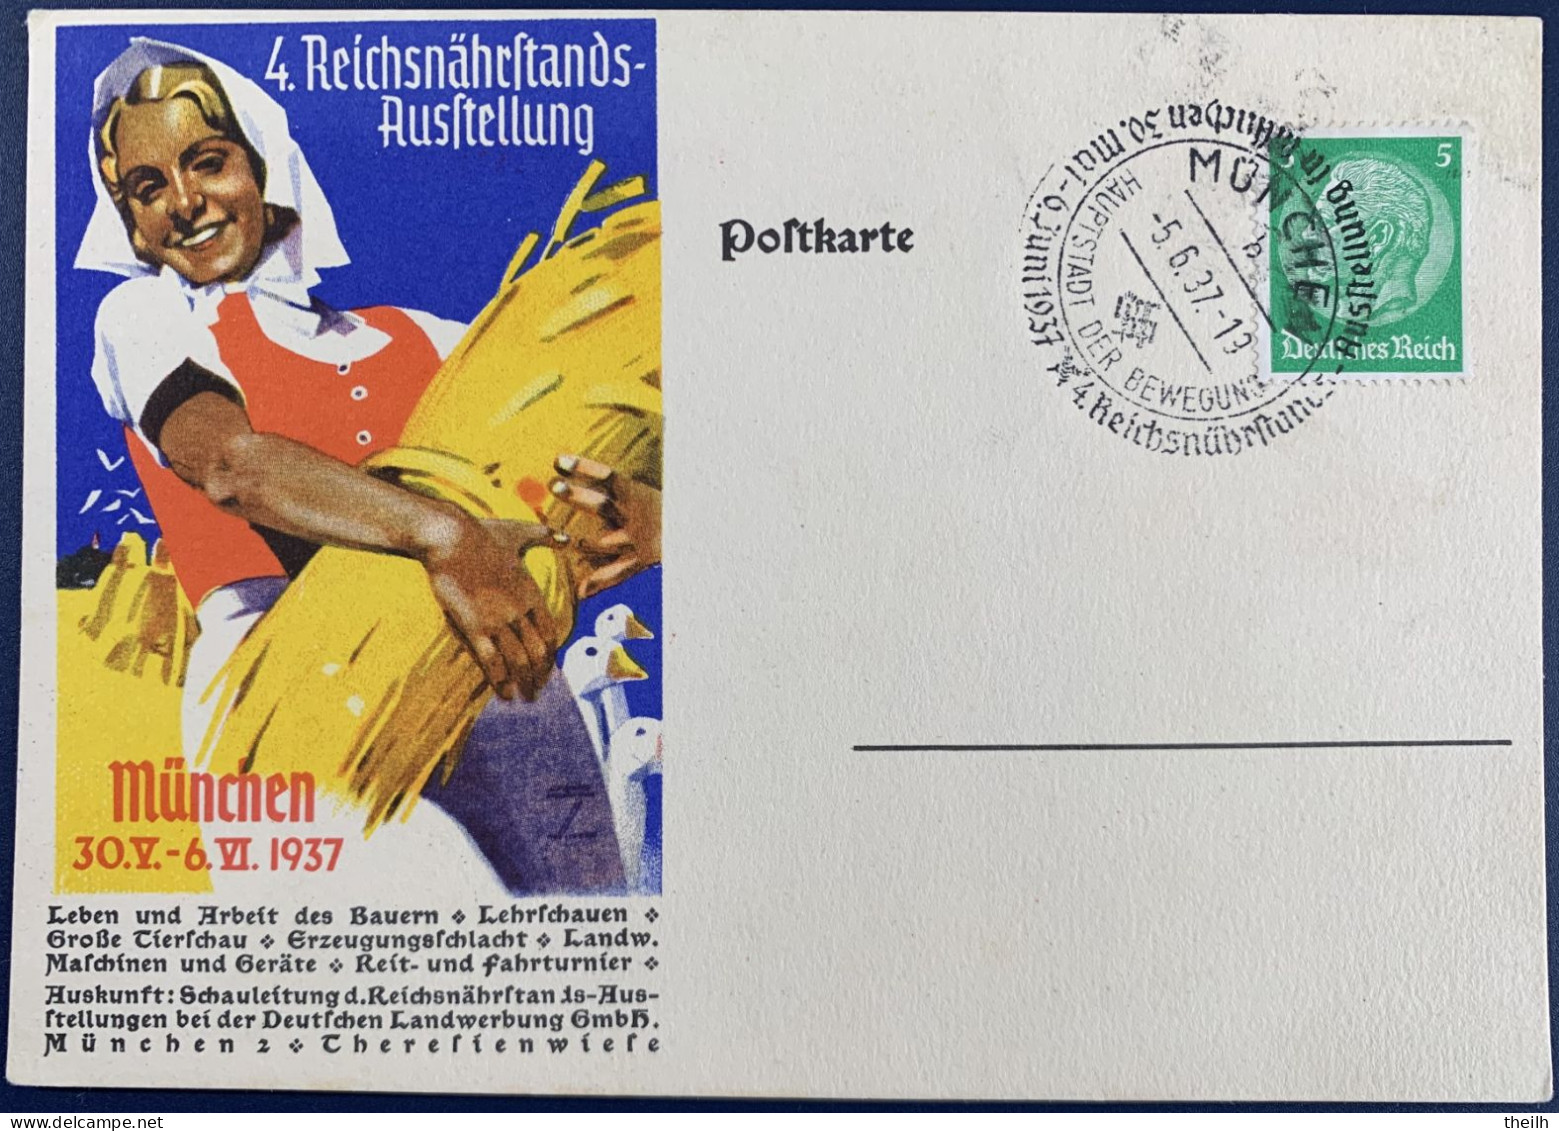 Postkarte, "4.Reichsnährstands Ausstellung München", 1937 - Private Postal Stationery